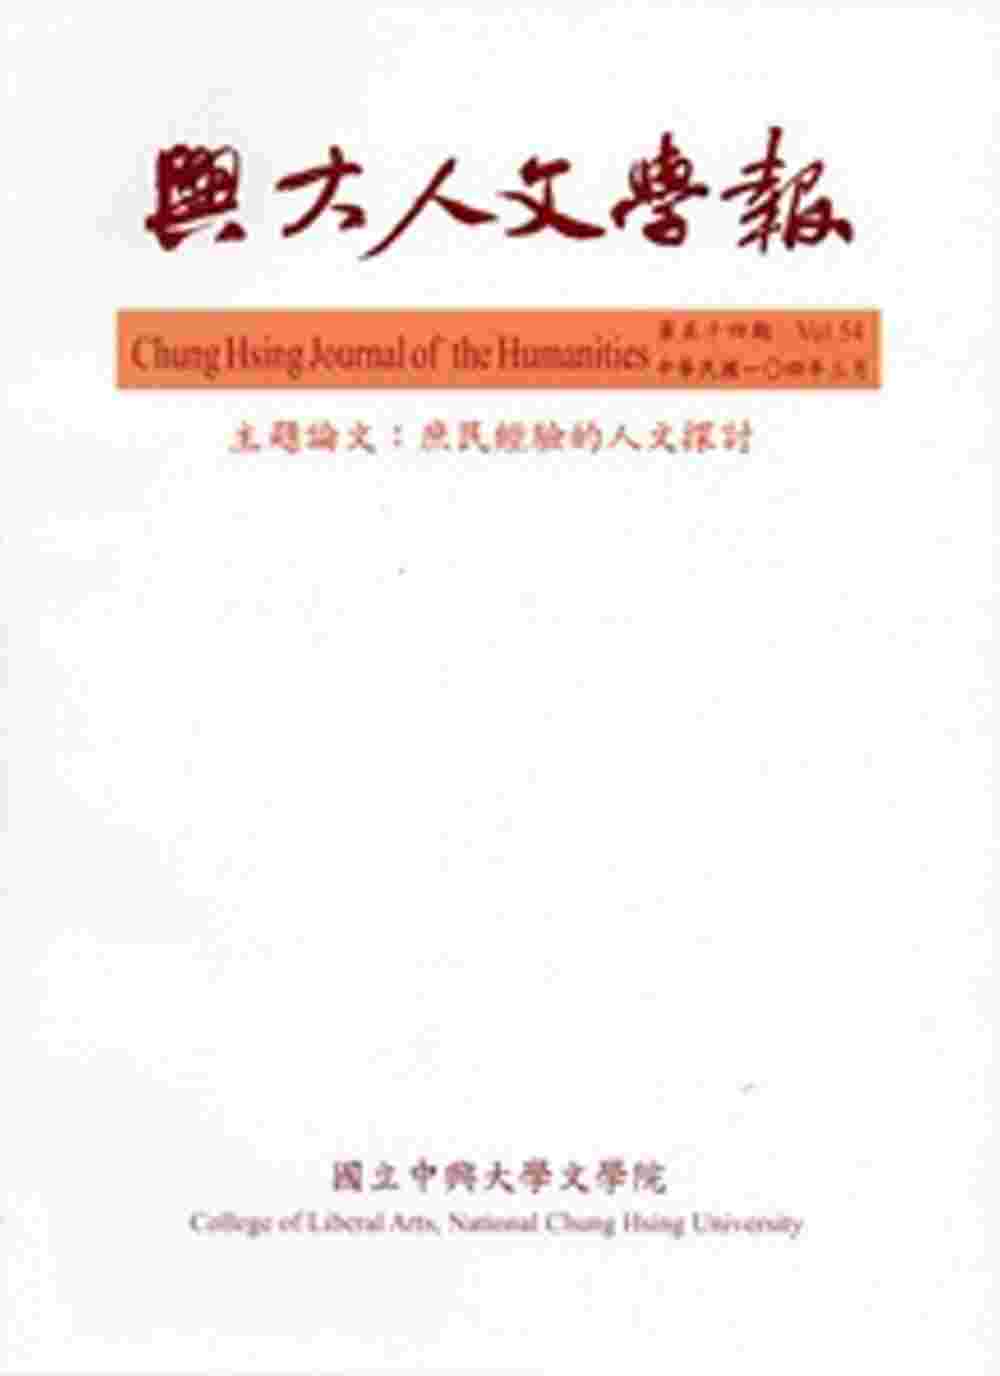 興大人文學報54期(104/3)